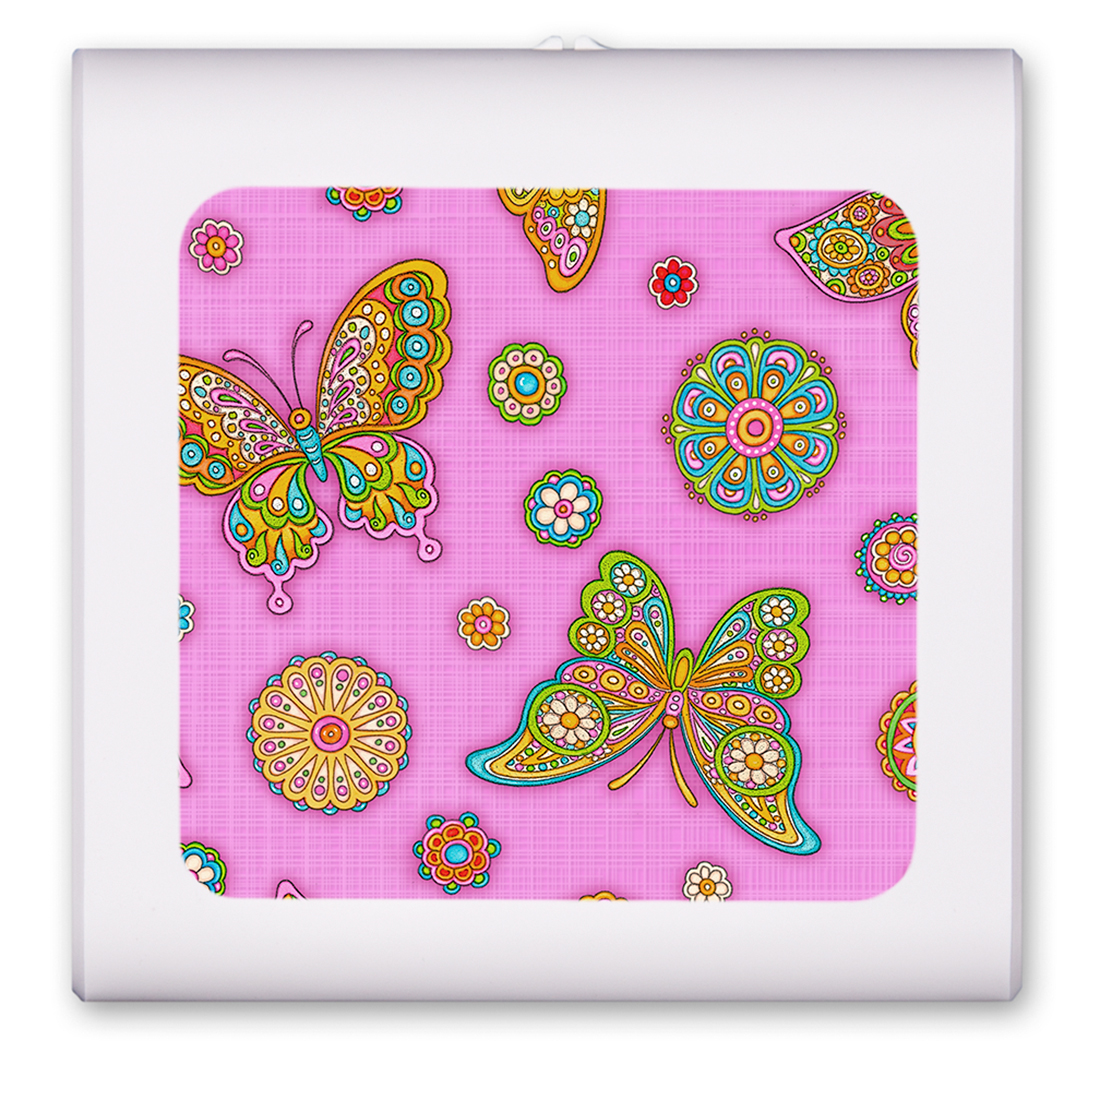 Paisley Butterflies (pink) - Image by Dan Morris - #7604